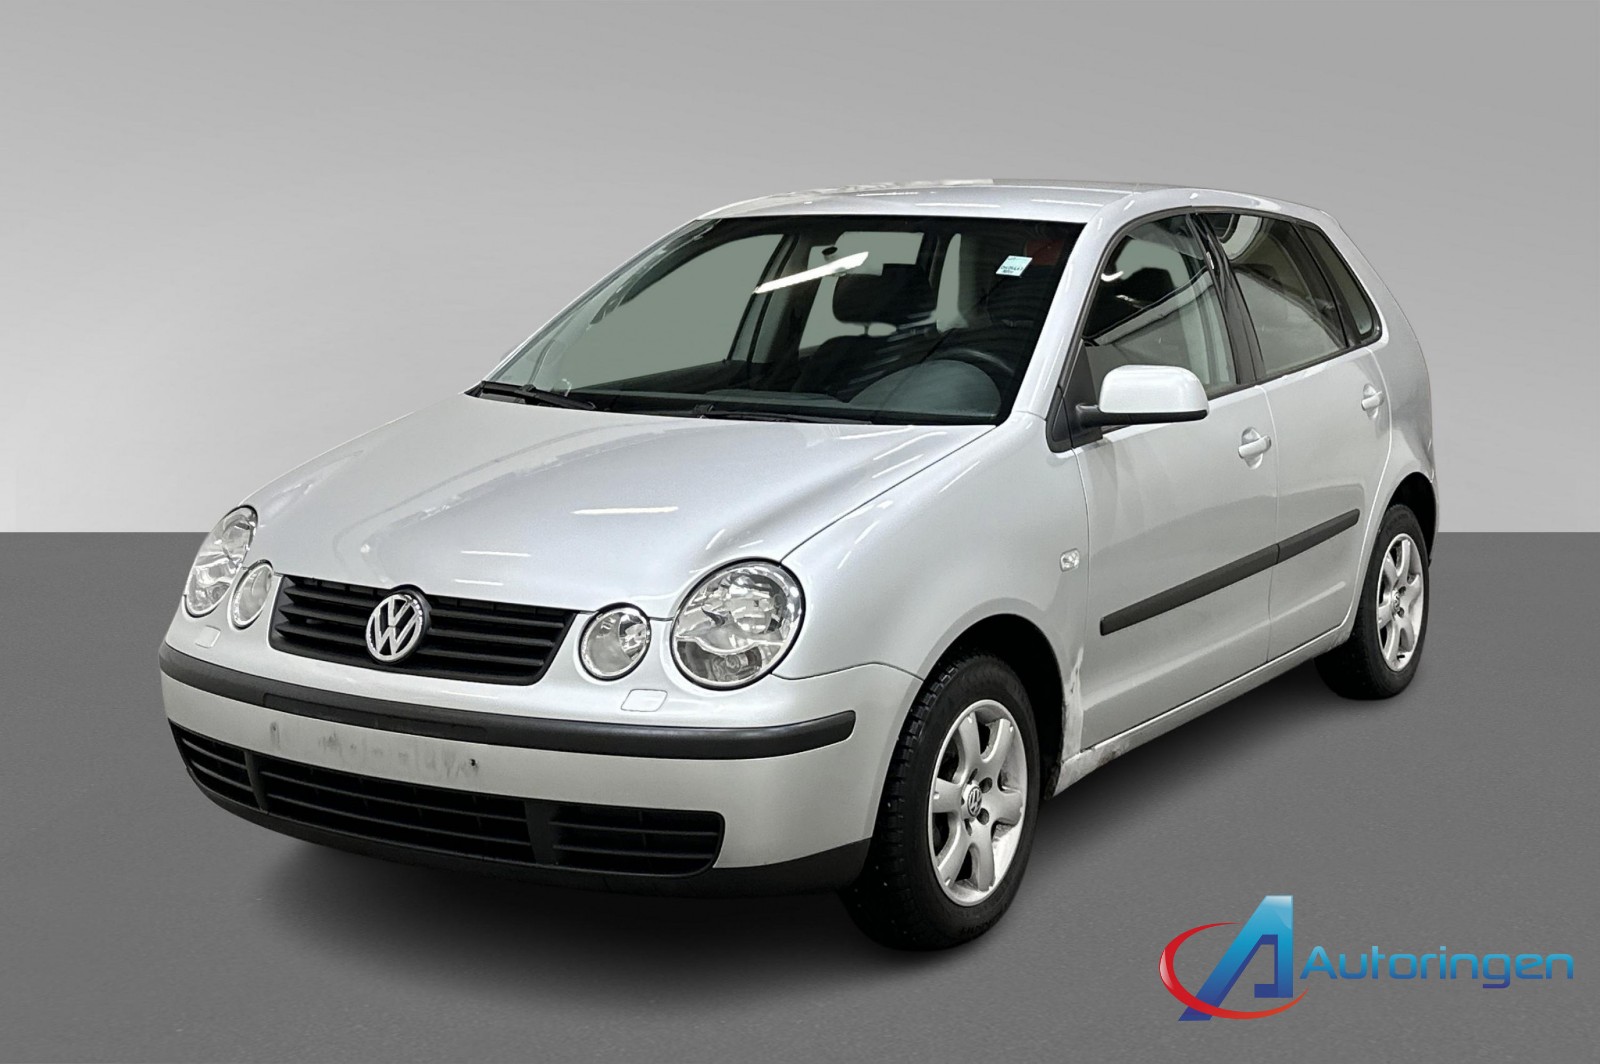 Bilde av 'Volkswagen Polo 2002'